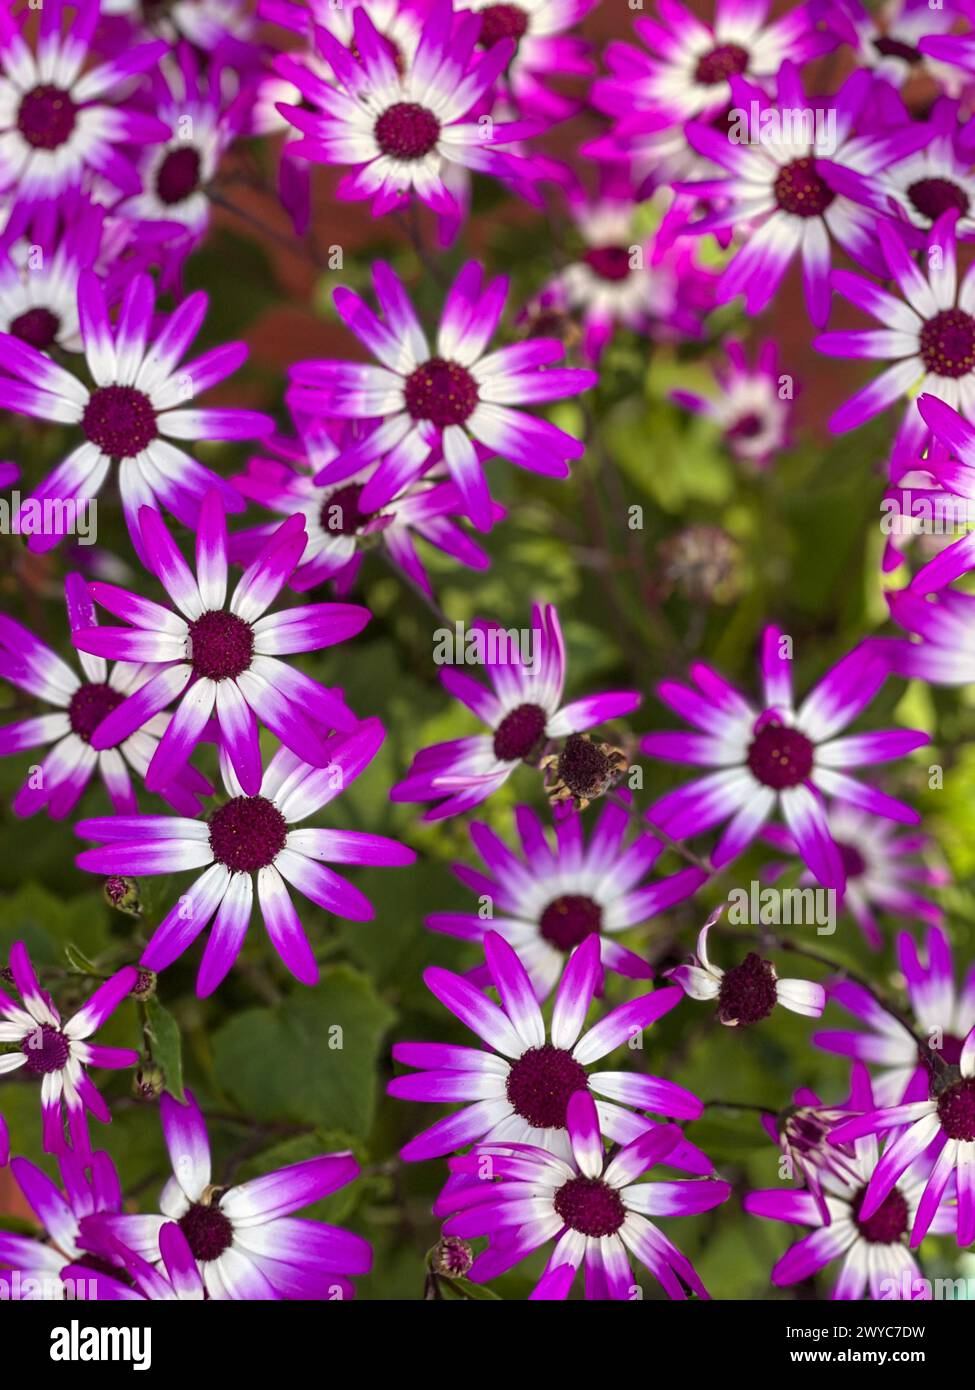 Die Nahaufnahme zeigt ein Muster, das von wunderschönen Lavendel-Gänseblümchen gebildet wird, die im Frühling blühen. Stockfoto